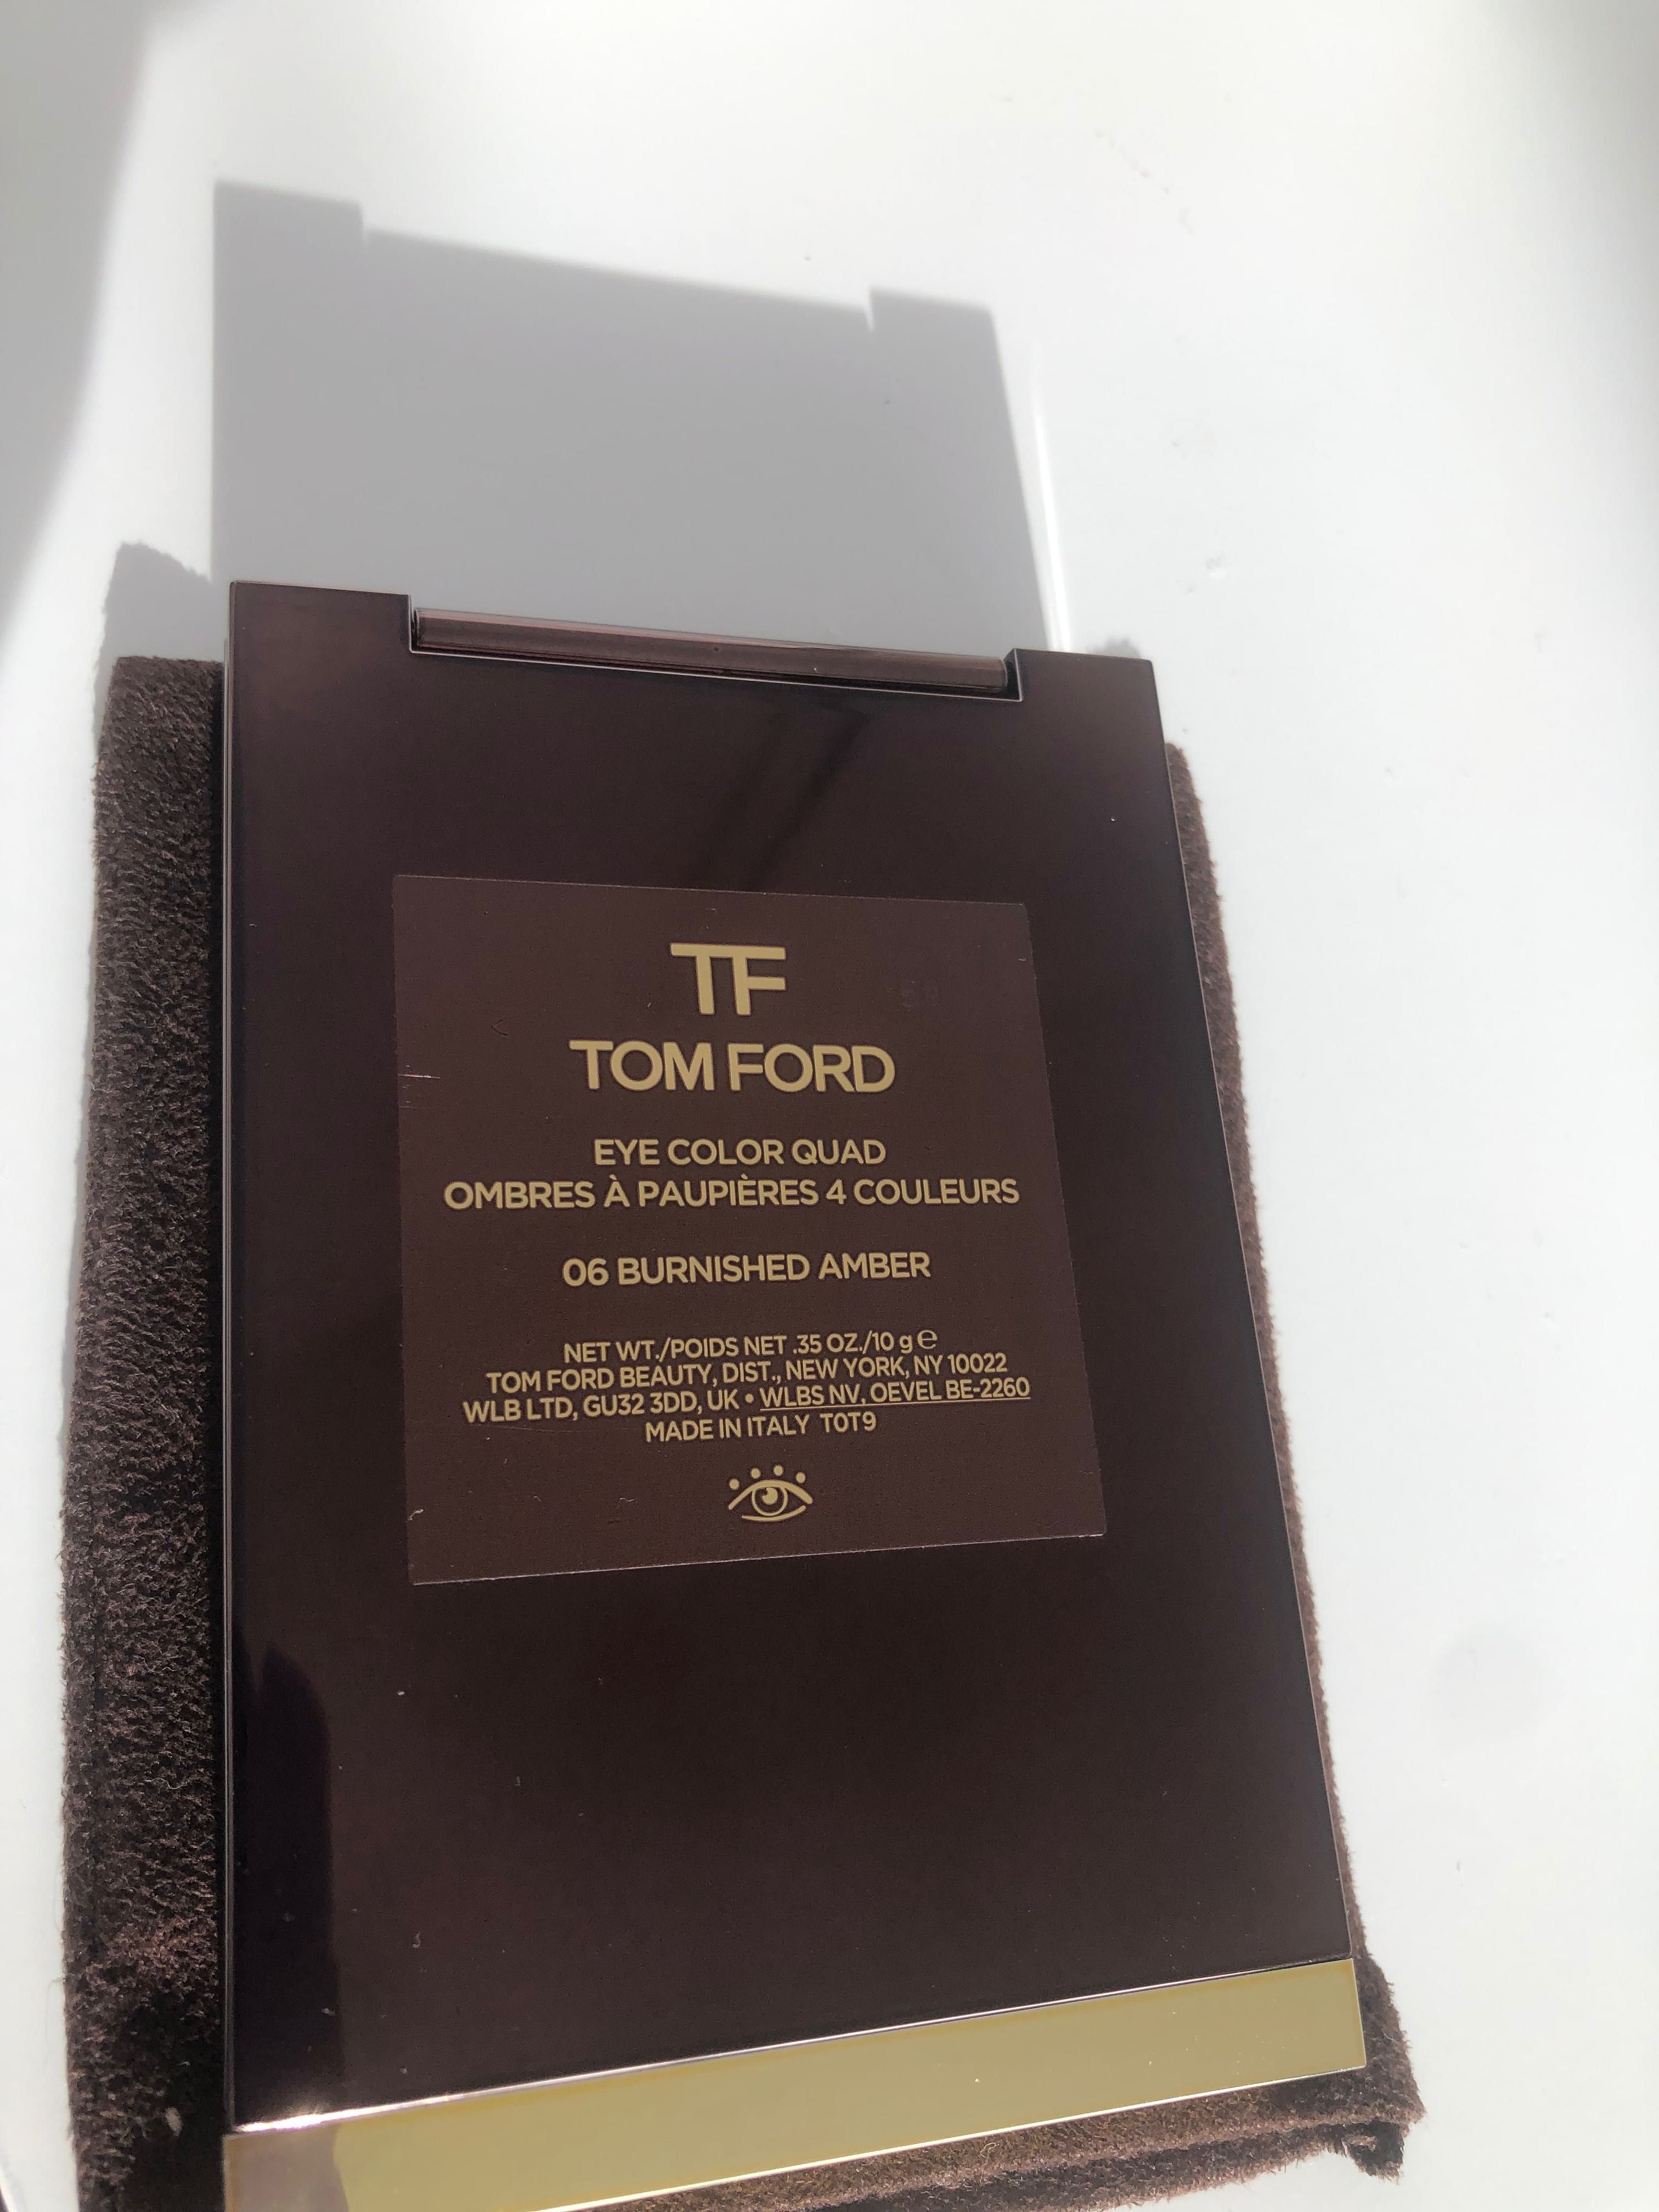 Tom Ford truse autentice